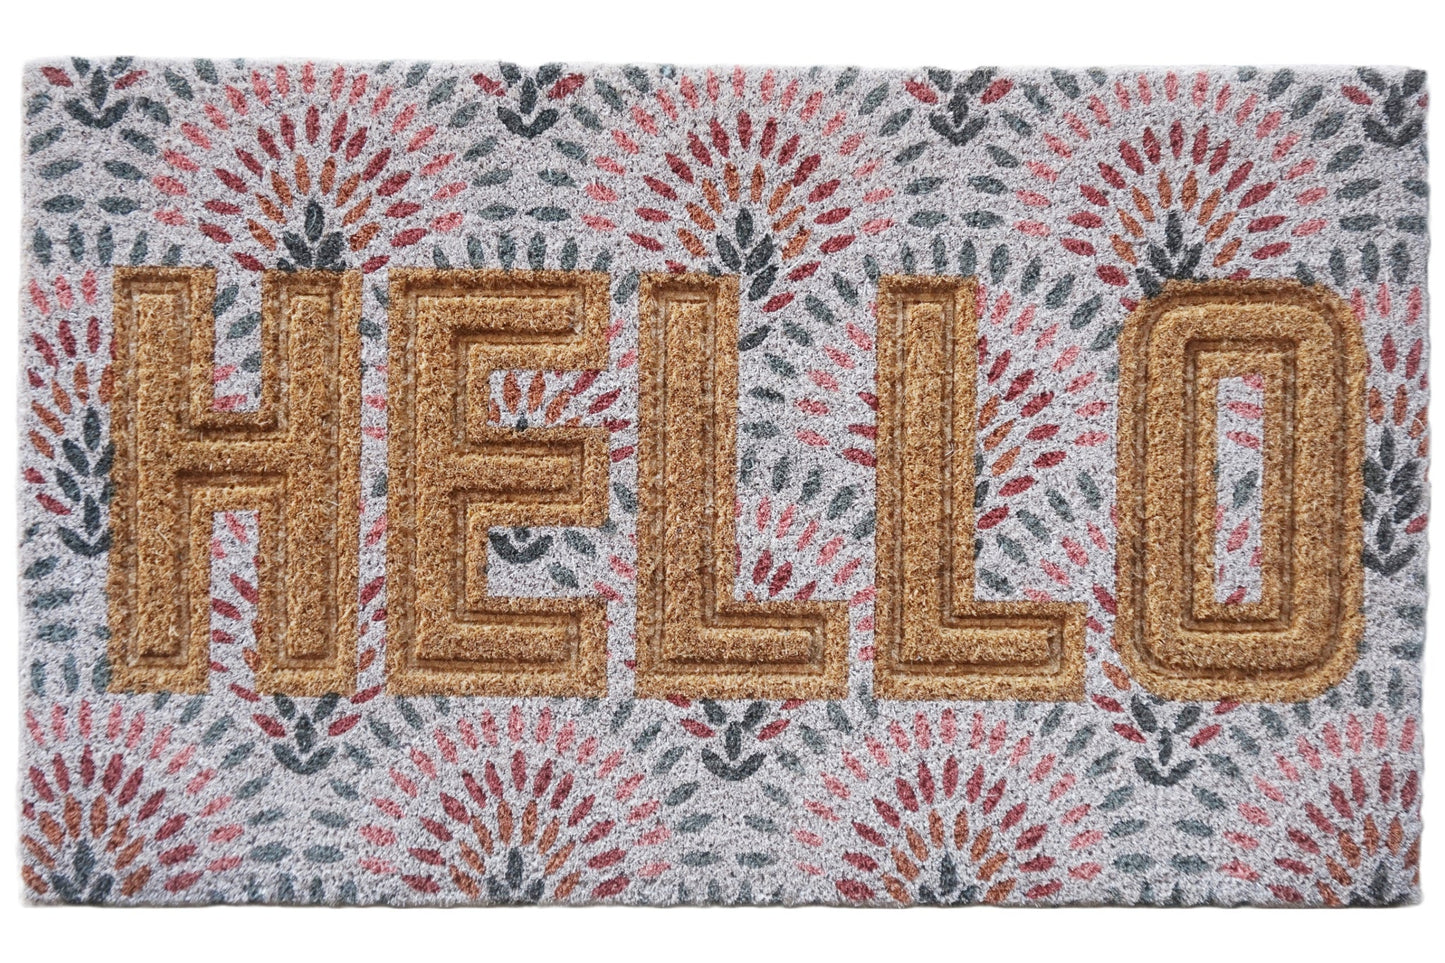 Pressed Coir Doormat "Hello", Multicolor, PVC Tufted